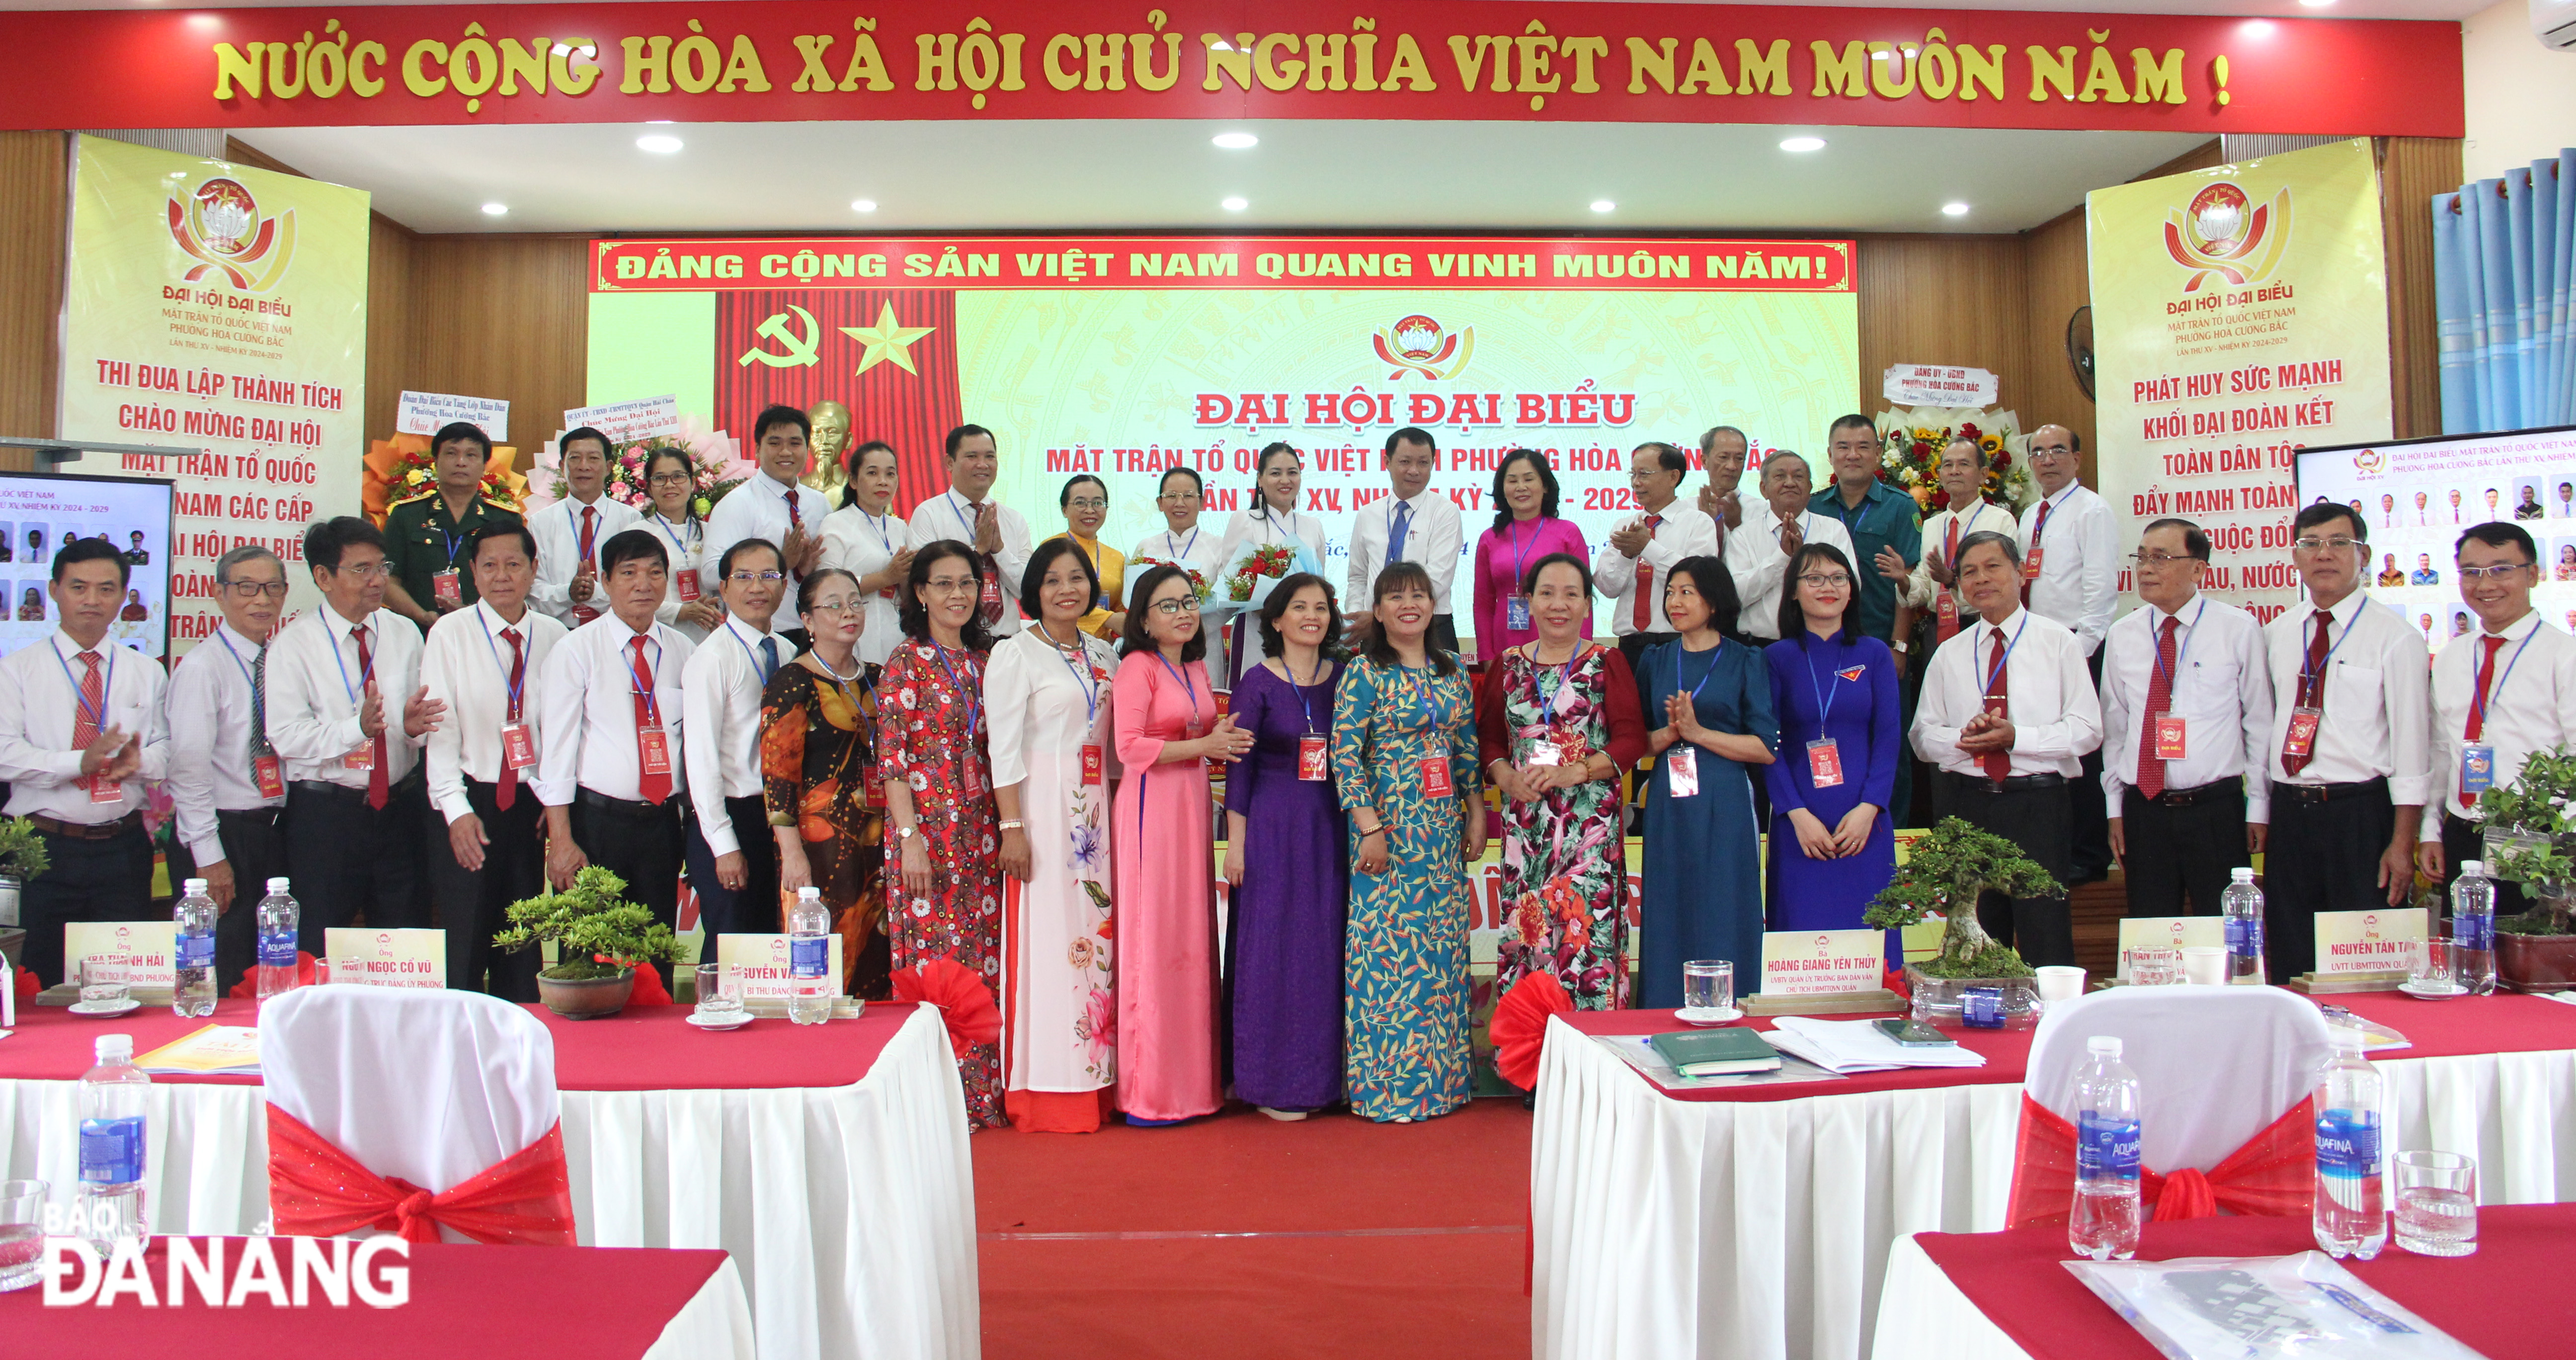 33 thành viên của Ủy ban MTTQ Việt Nam phường Hòa Cường Bắc khóa XV, nhiệm kỳ 2024-2029 ra mắt đại hội. Ảnh: X.H